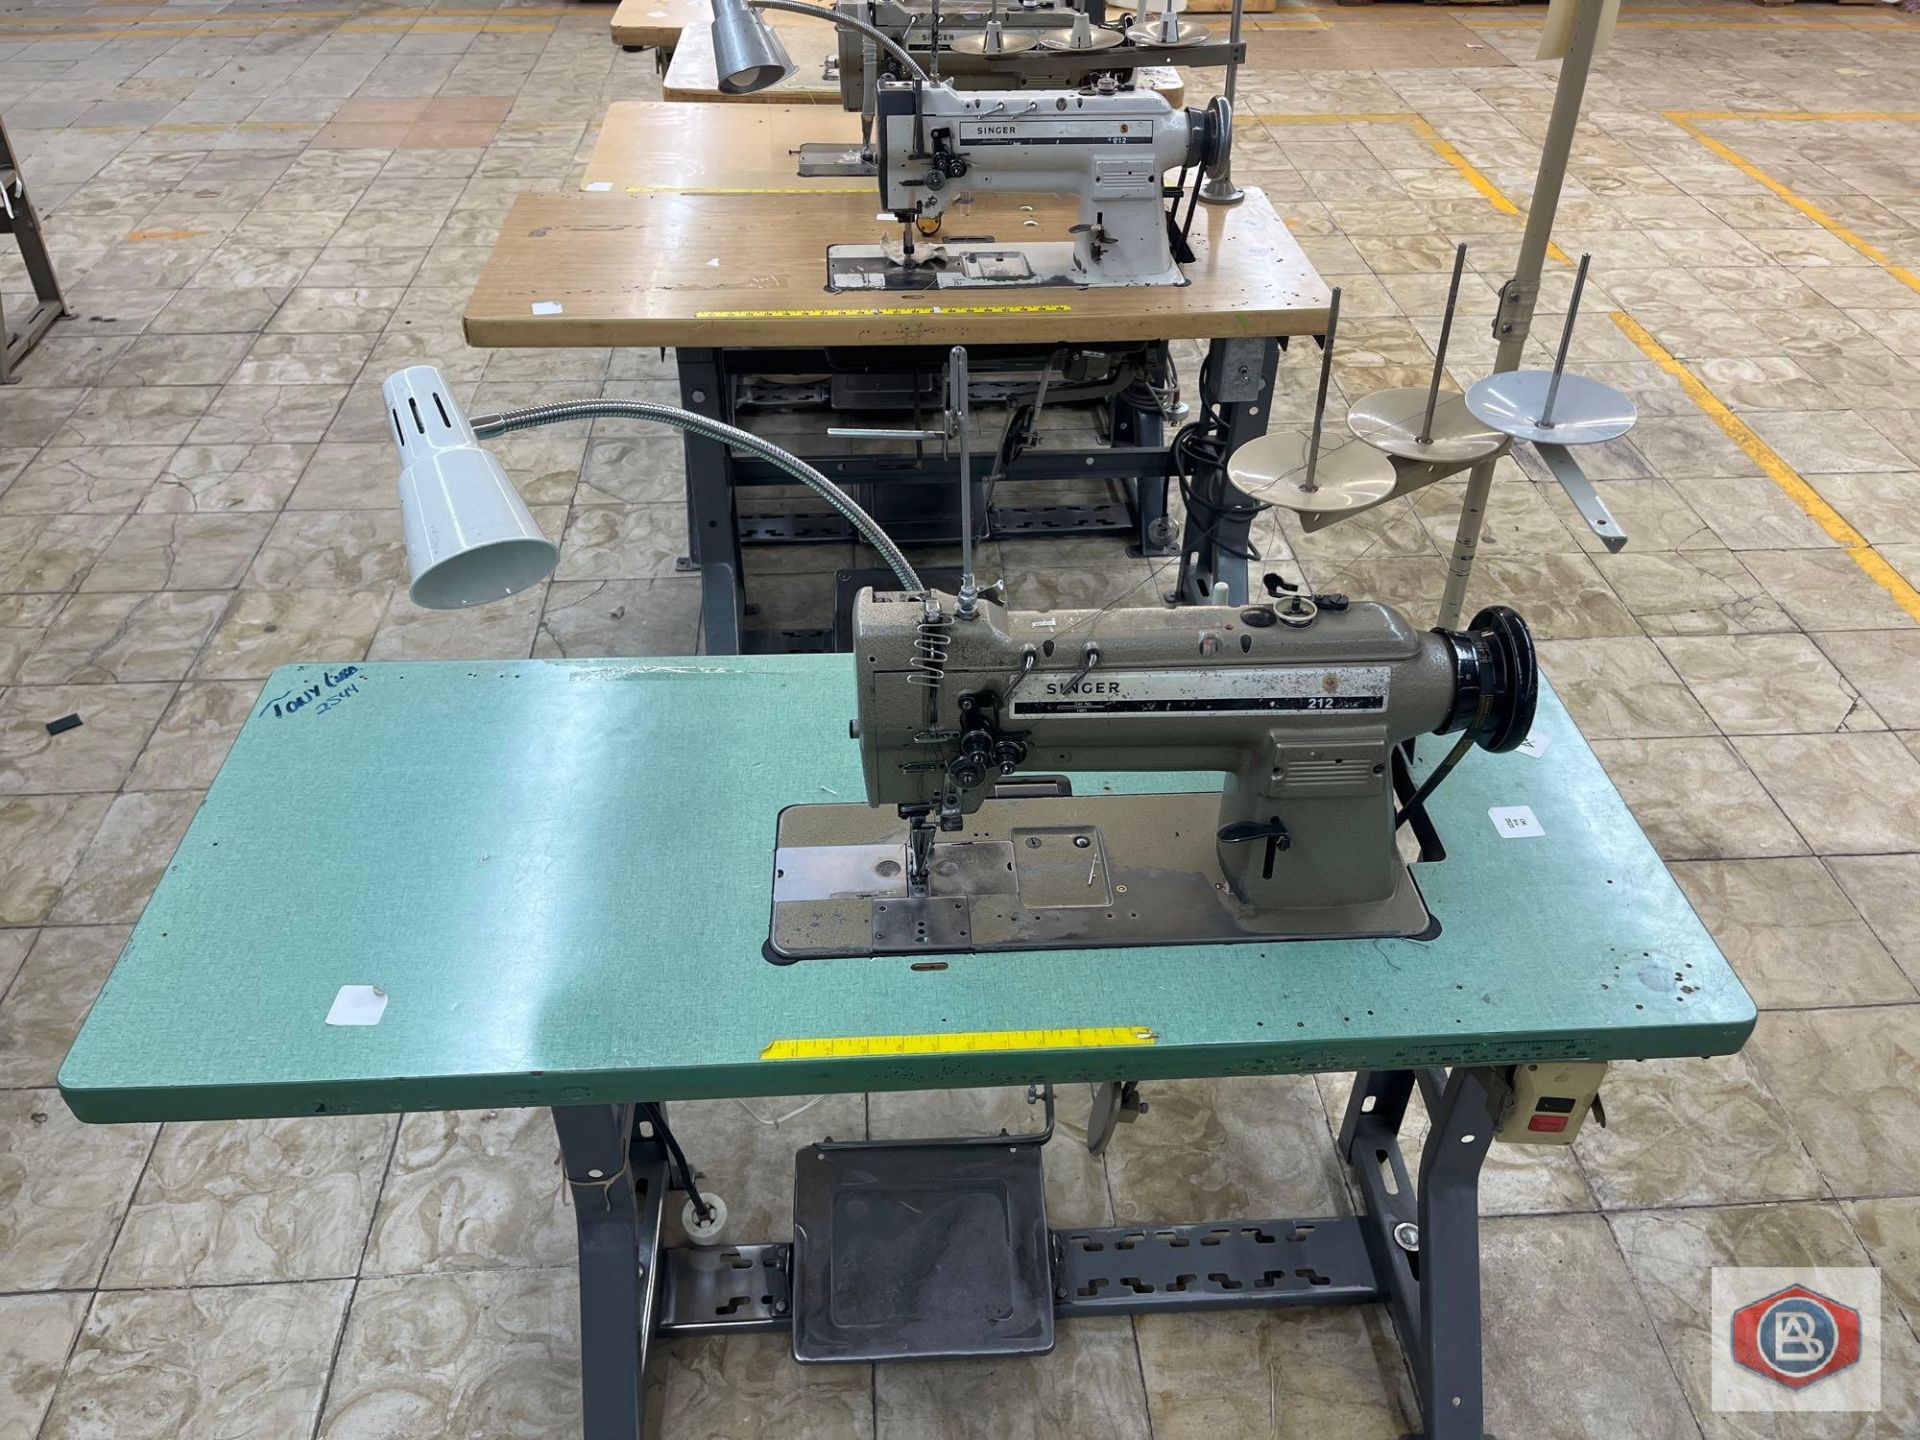 Singer Sewing Machine - Image 2 of 4